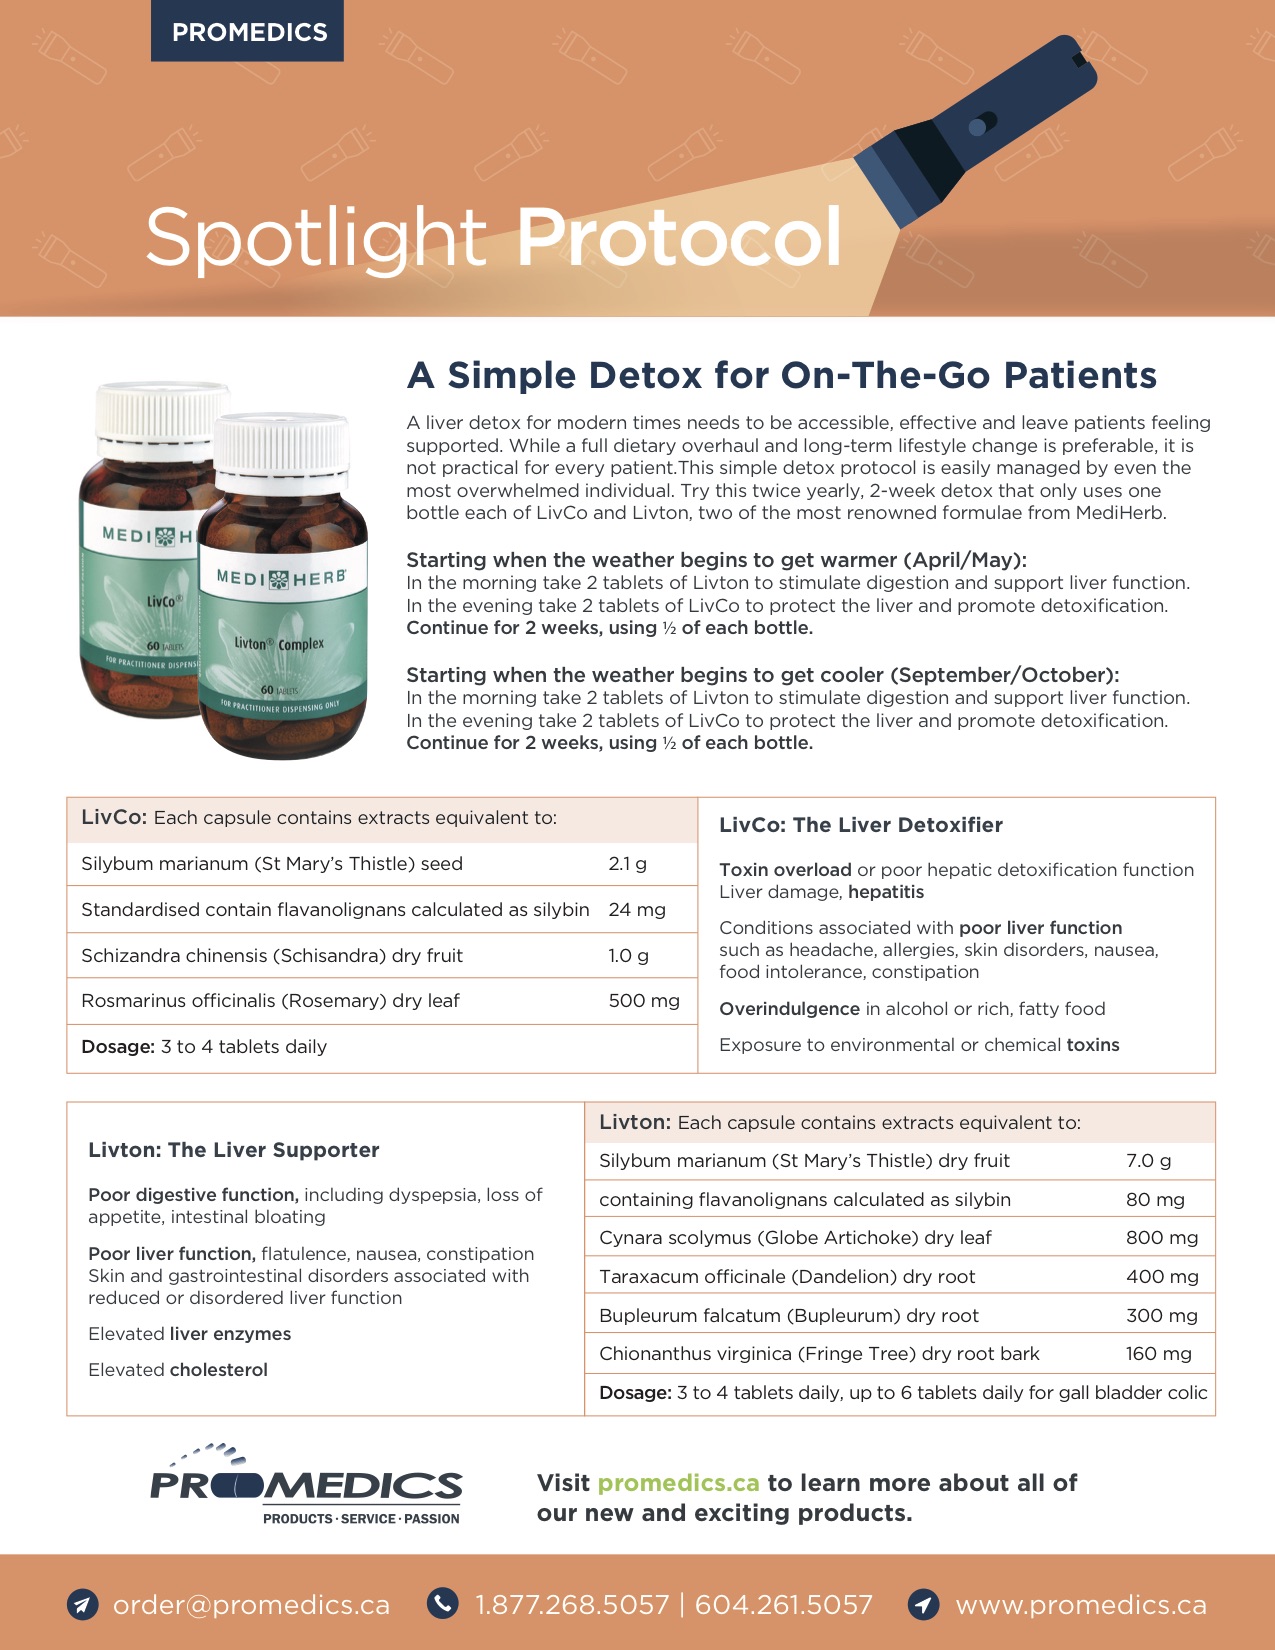 Spotlight Protocol - Detox